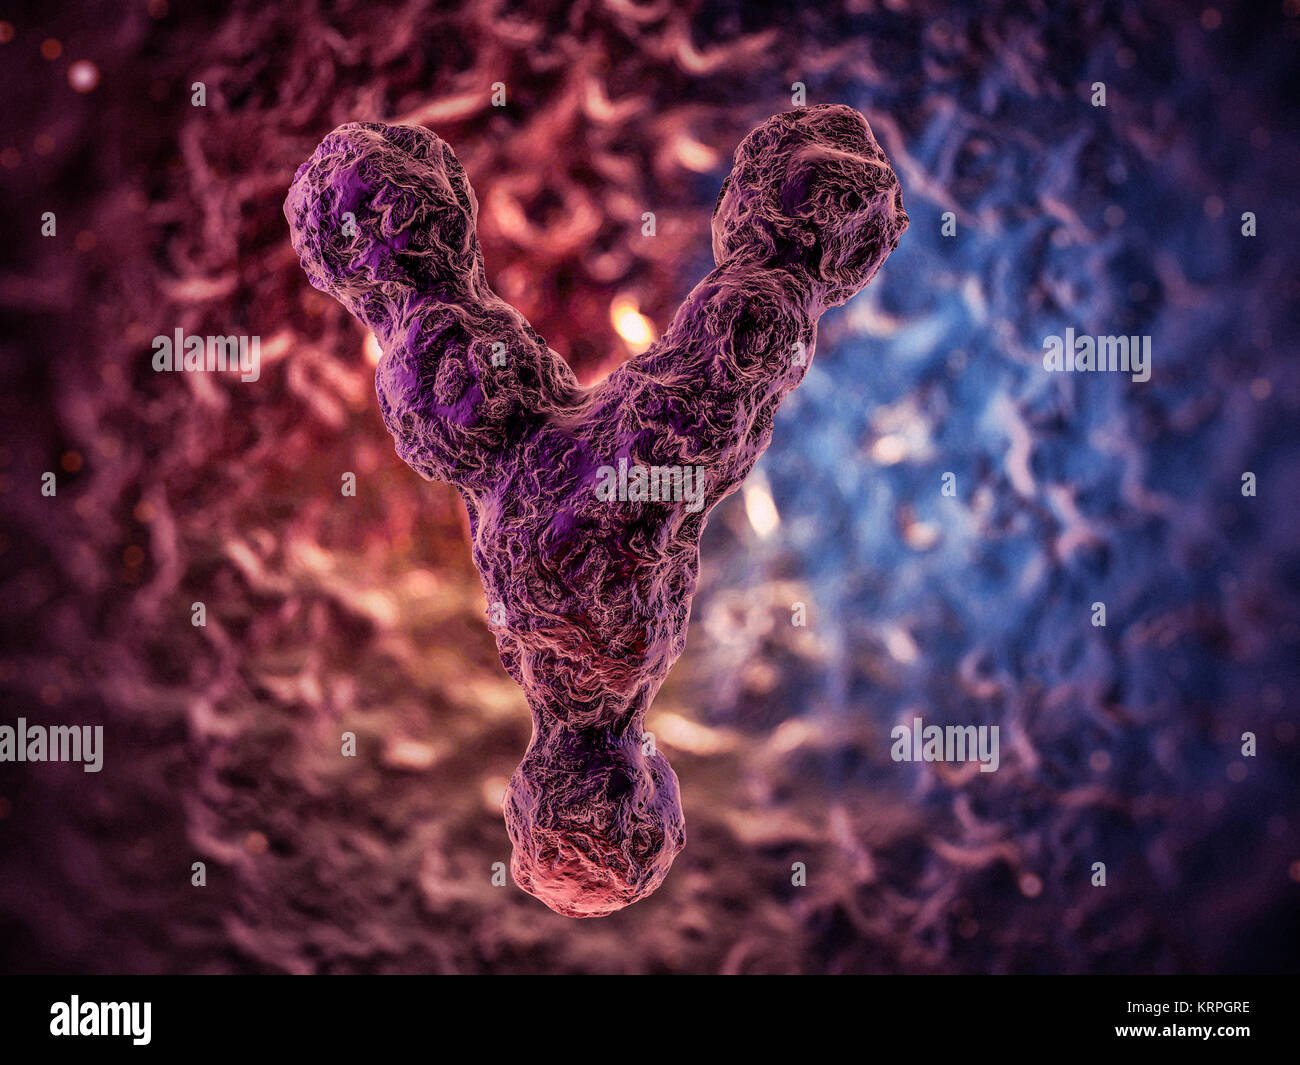 Chromosomes, gene mutation, genetic code 3D rendering Stock Photo